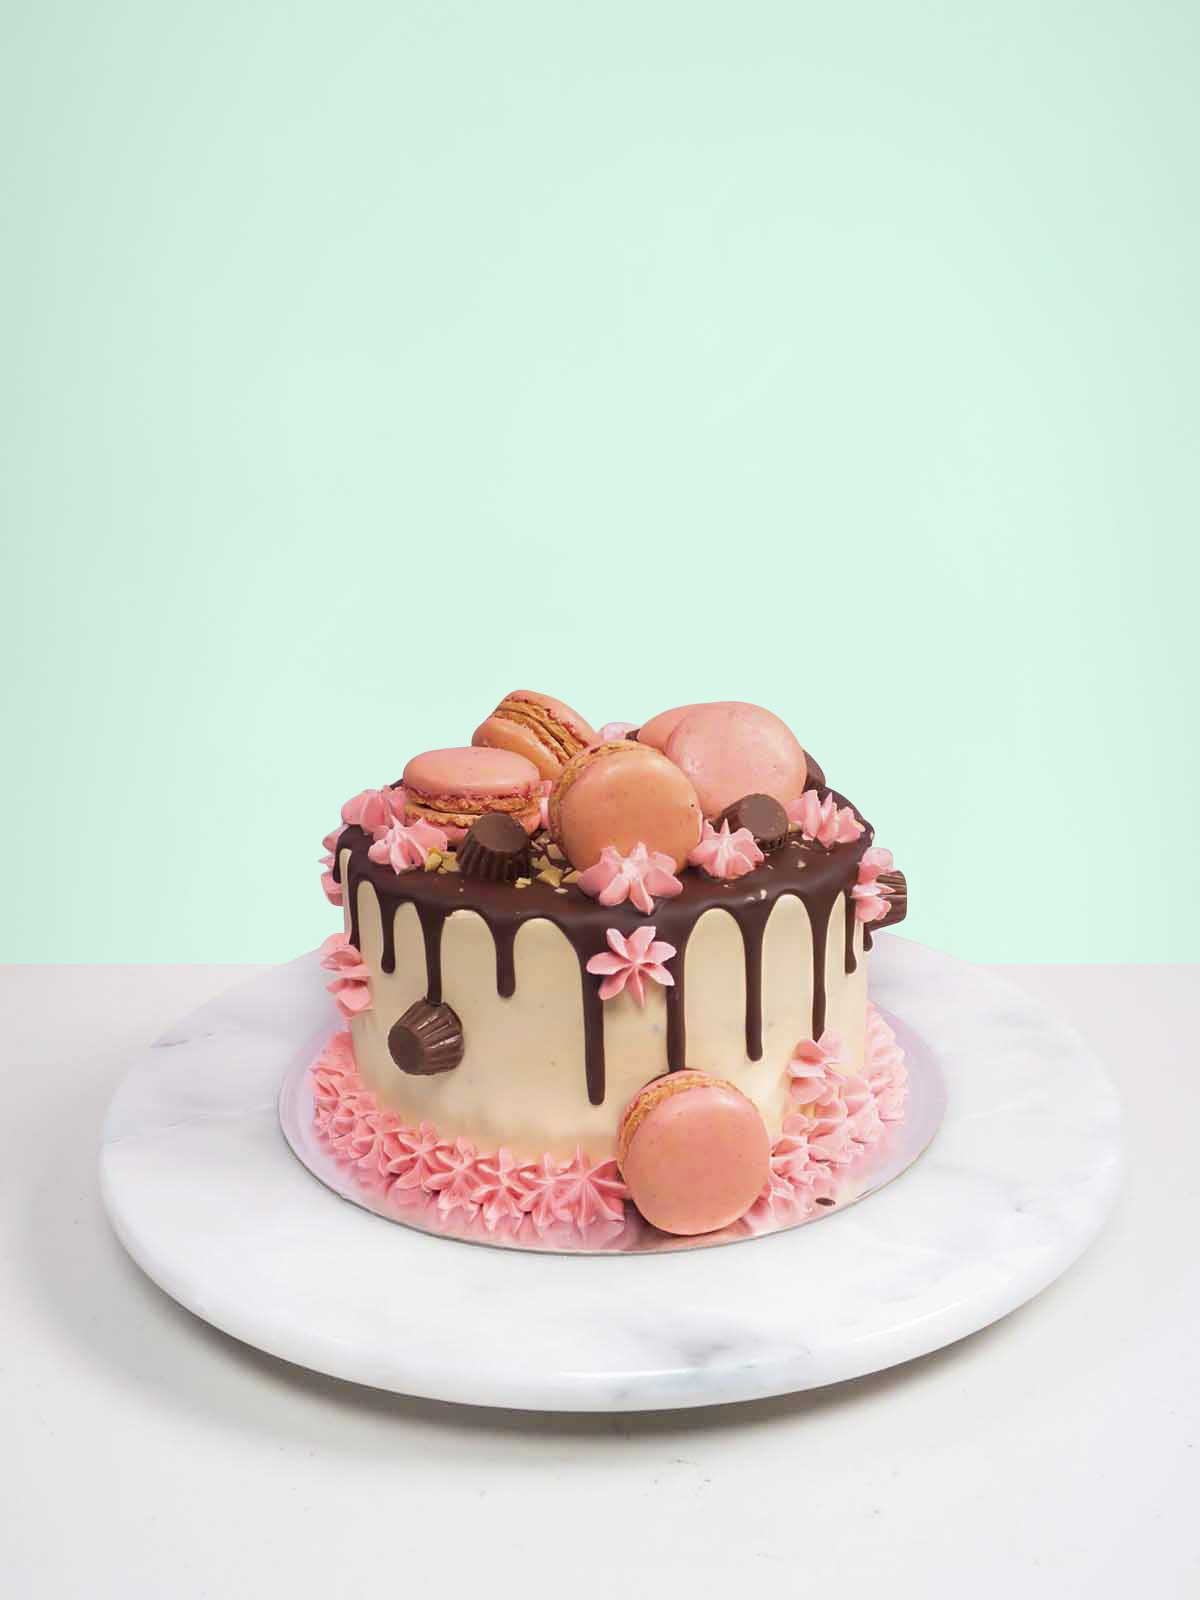 Elegant Birthday Cakes for Women